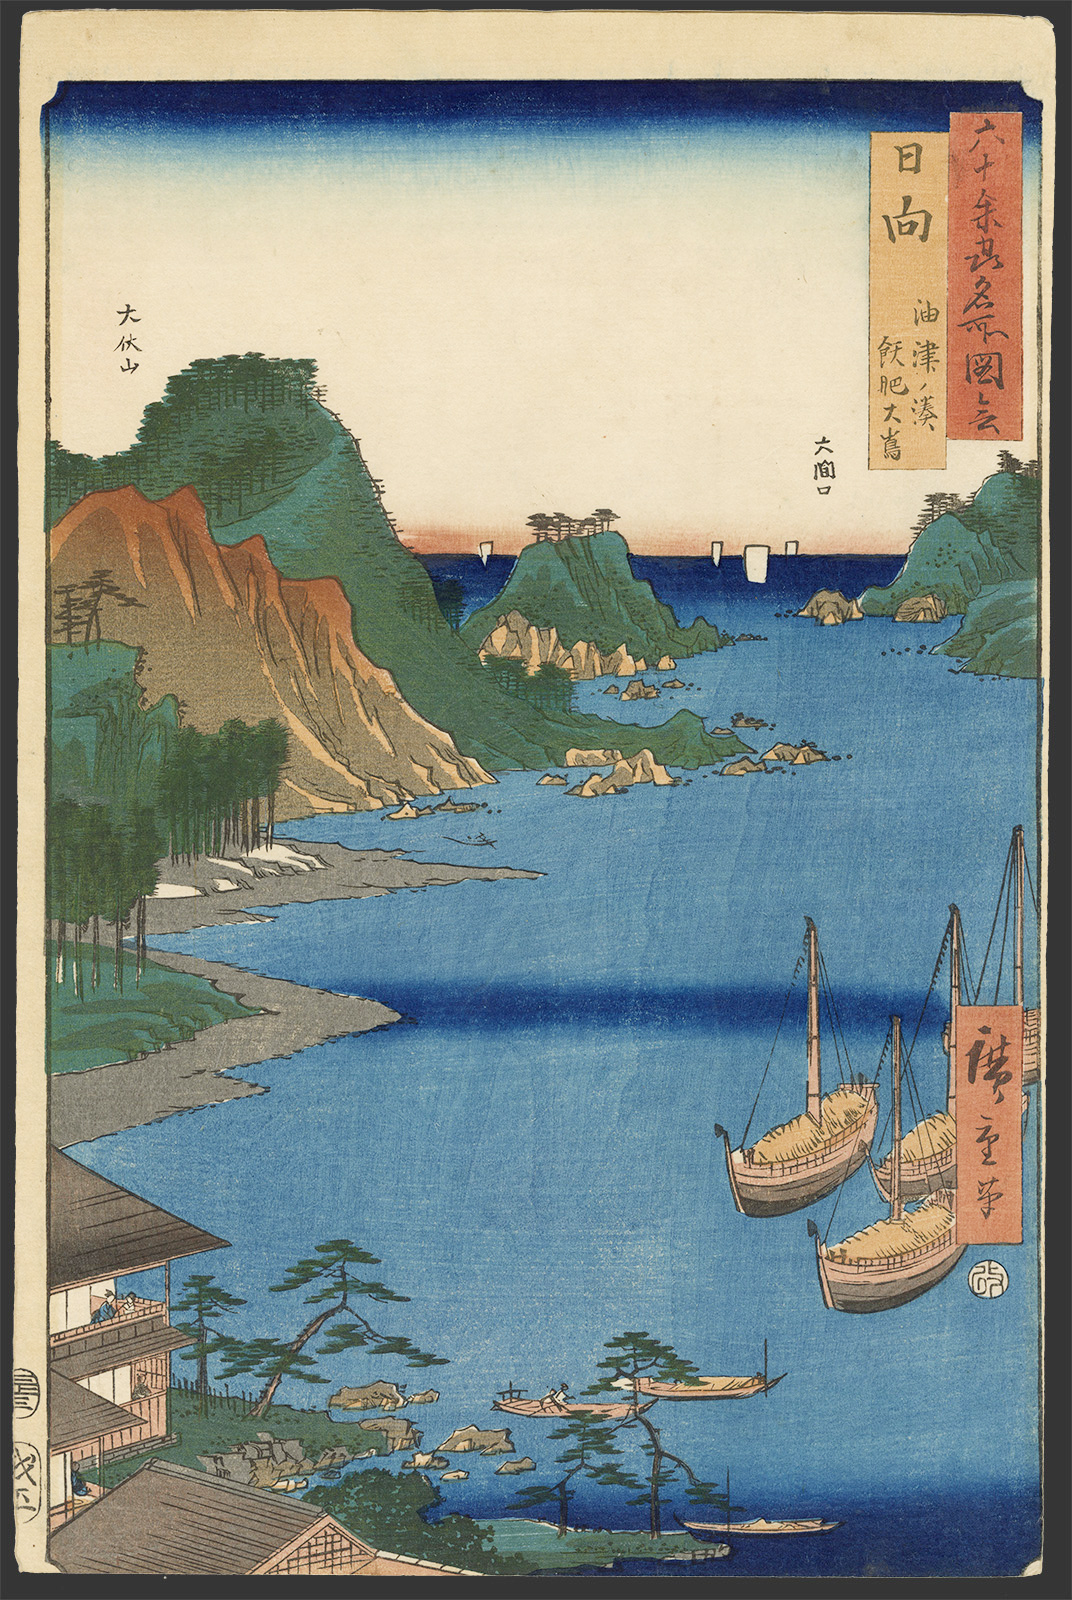 広重 / Hiroshige「六十余州名所図会 日向 油津ノ湊 飫肥大嶋」